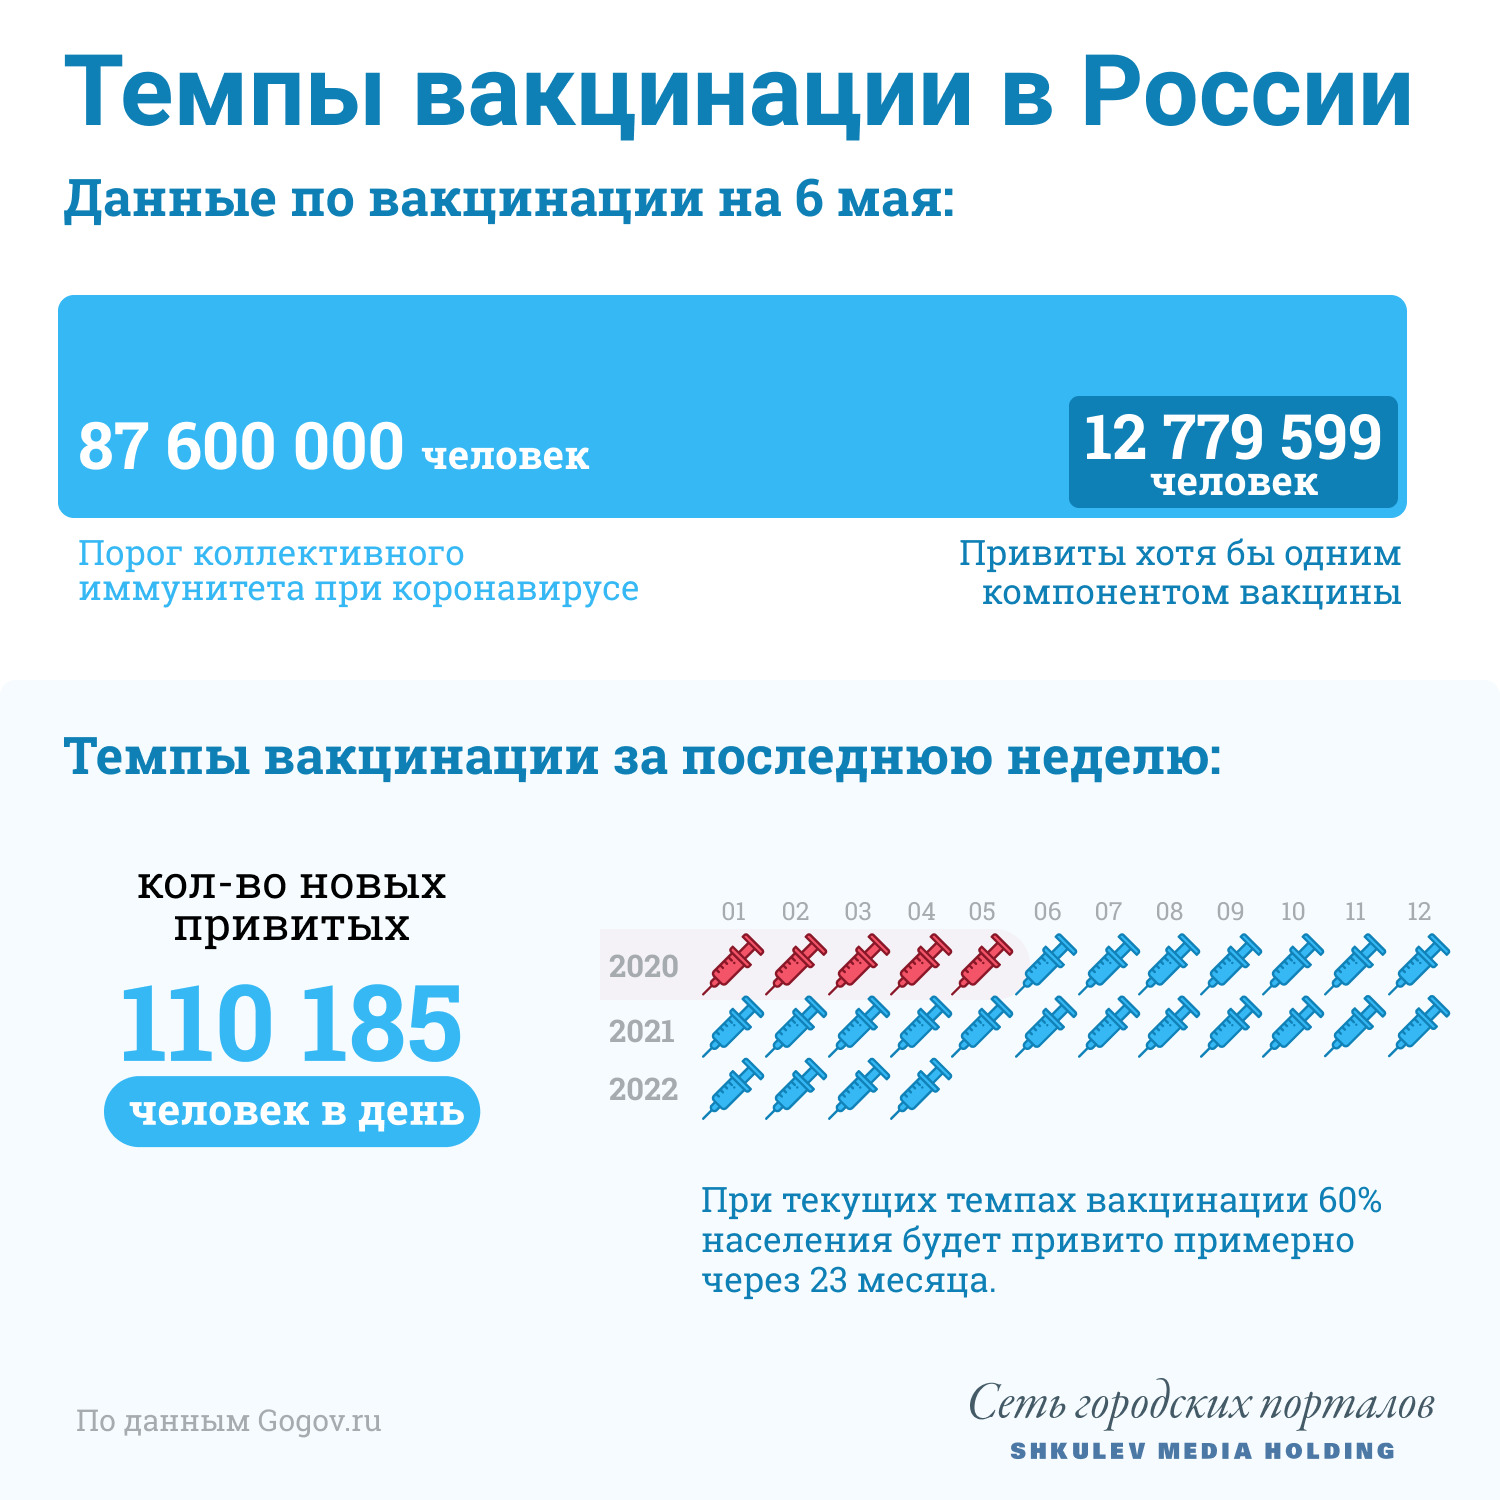 Темпы вакцинации в России